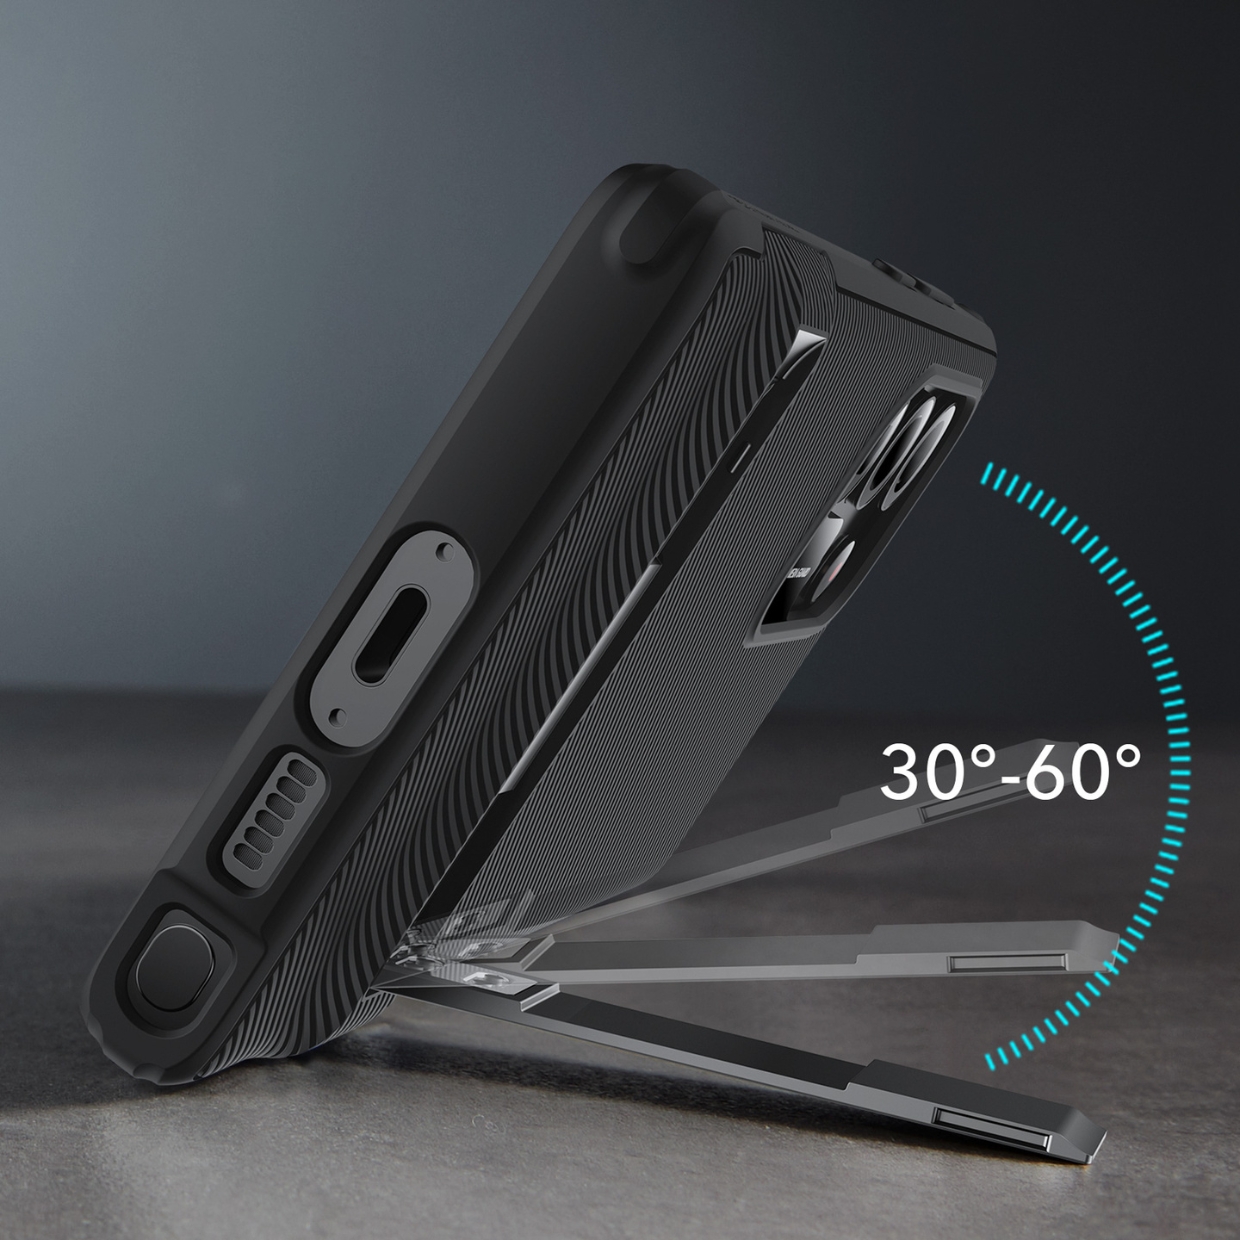 Ốp Lưng Case Bảo Vệ ESR Dành Cho Samsung Galaxy S23 Ultra, ESR Boost Kickstand, Tích Hợp Chân Đế Siêu Tiện Lợi - Hàng Chính Hãng